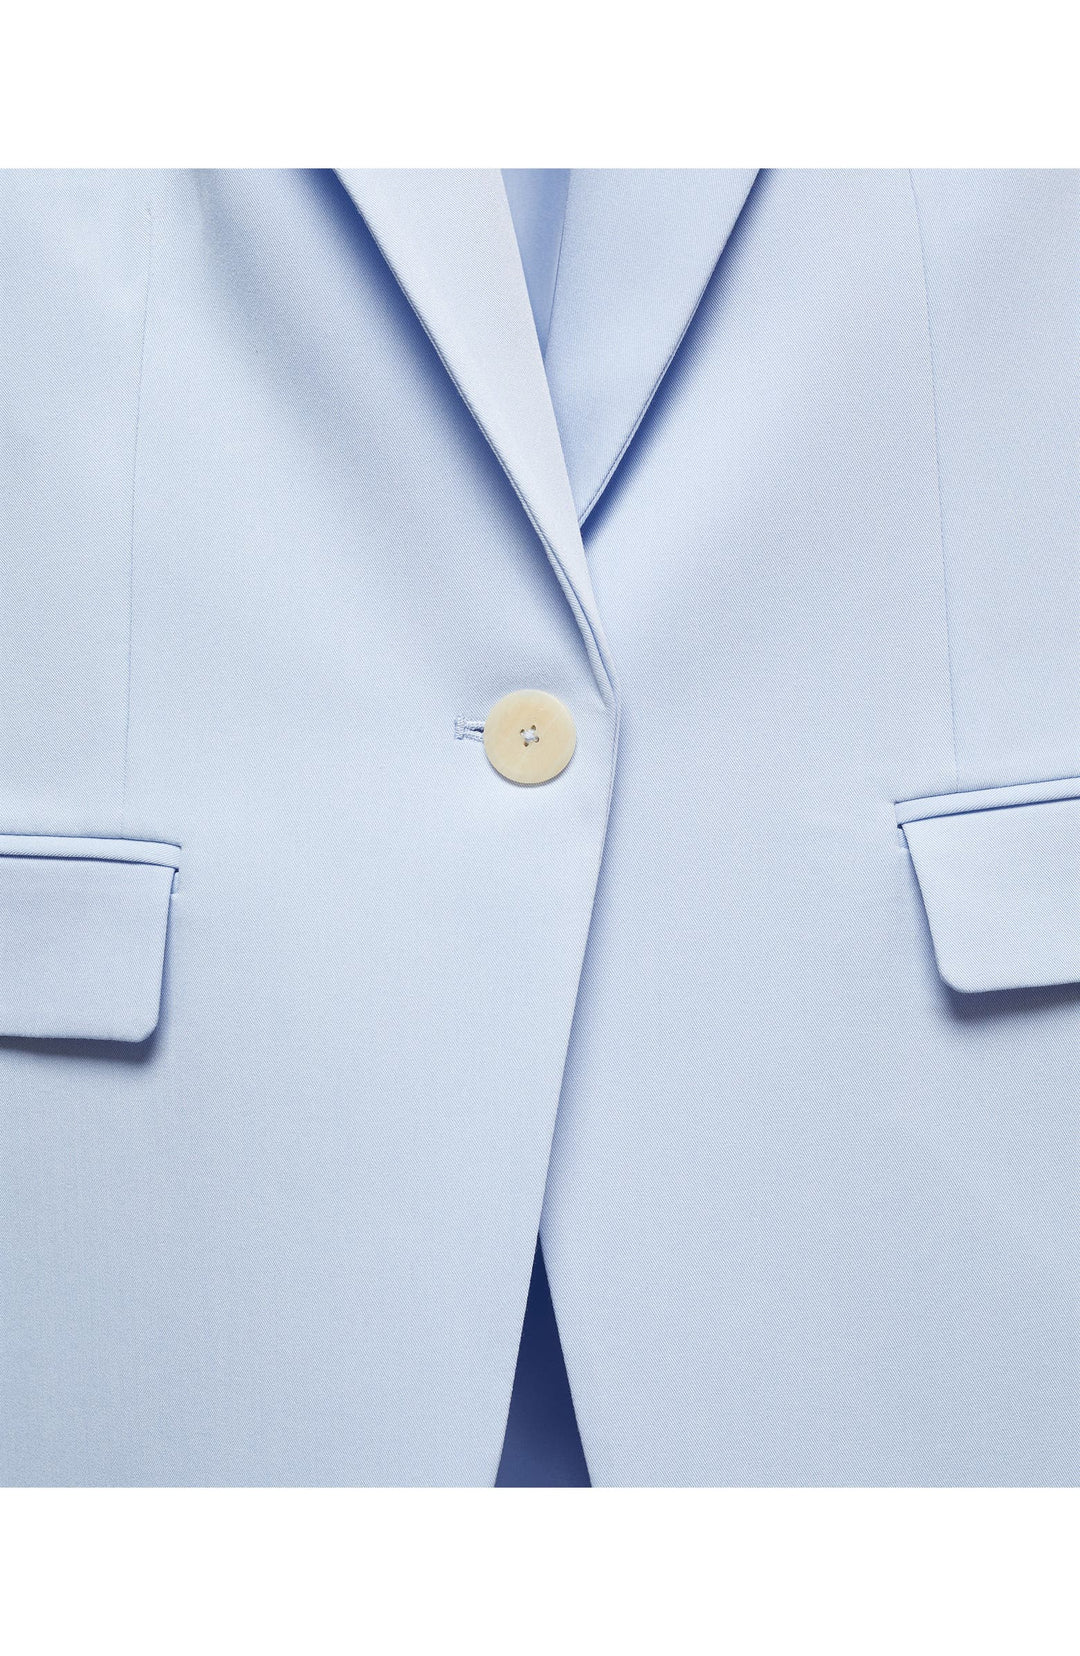 solovedress 2 Piece Light Blue Single Buttons Peak Lapel Women's Suit (Blazer+Pants）